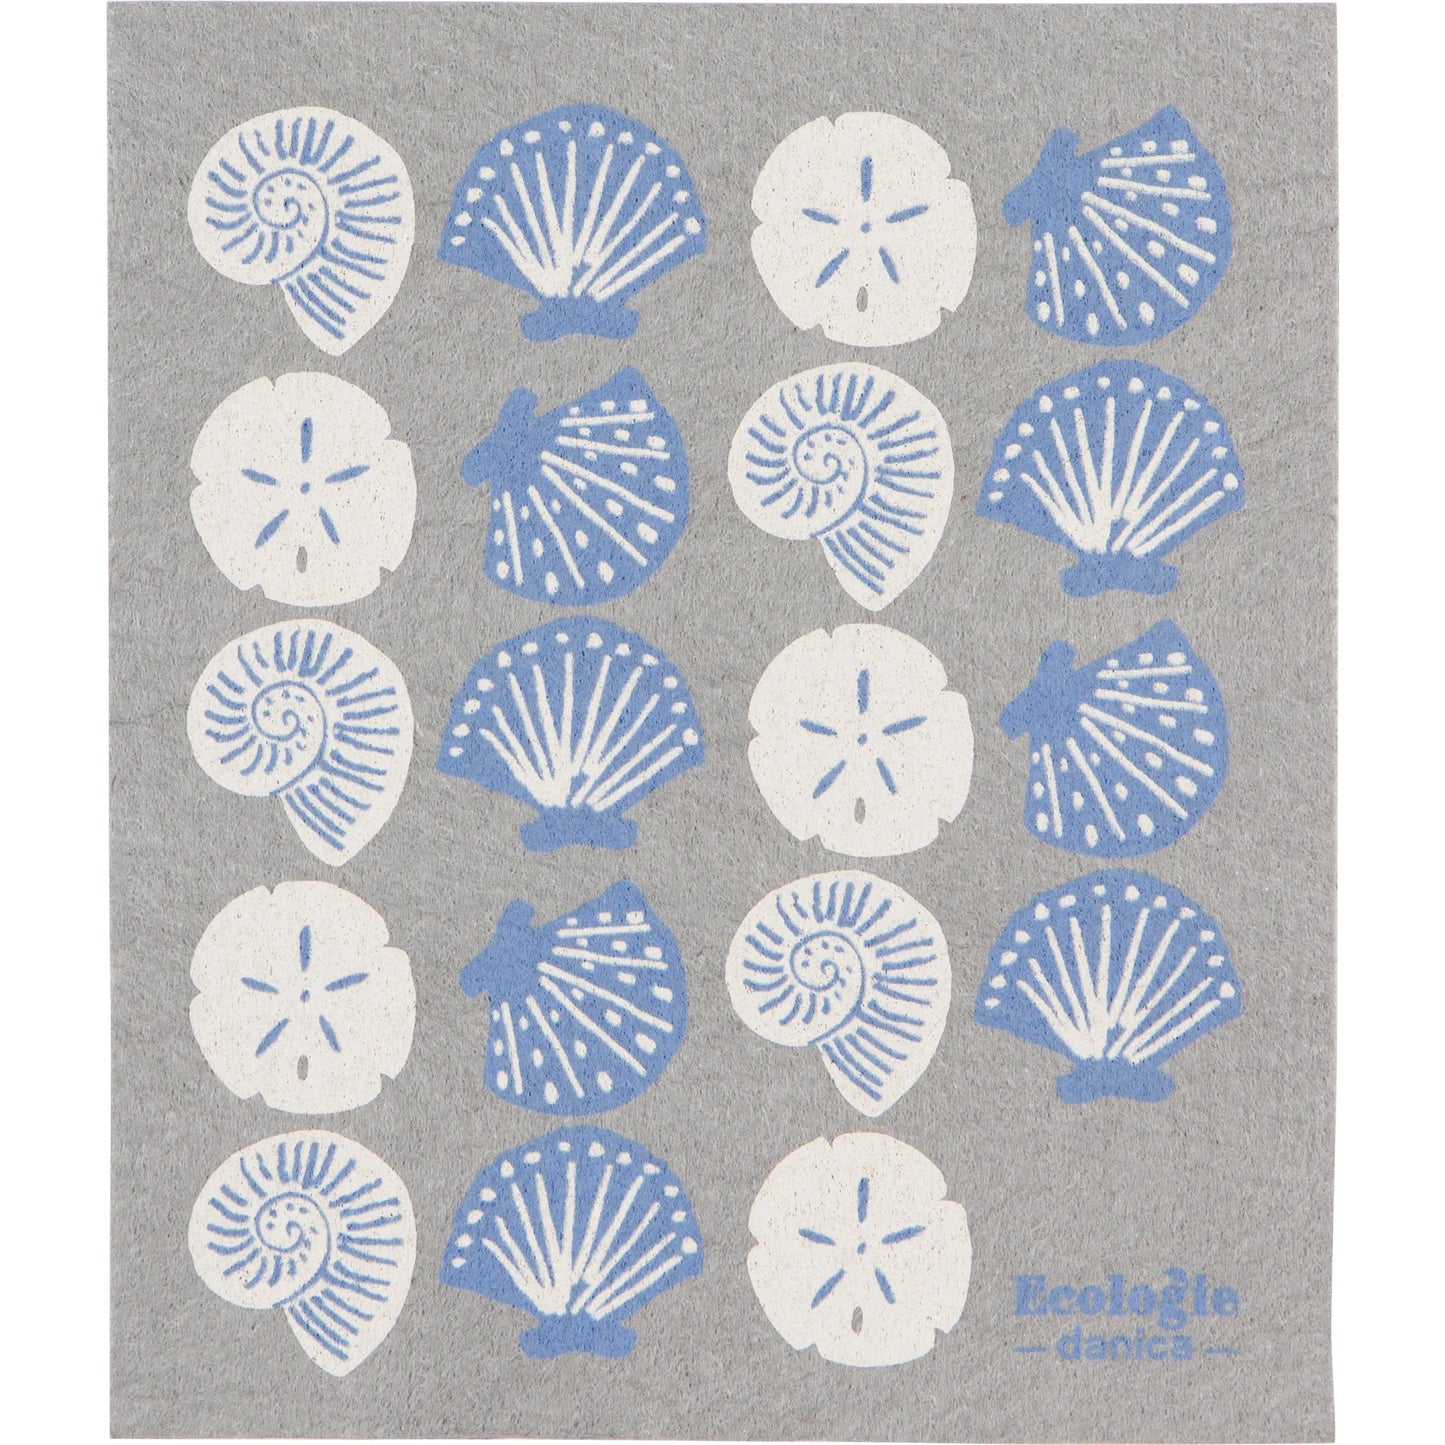 Swedish Dishcloth Seaside Shells